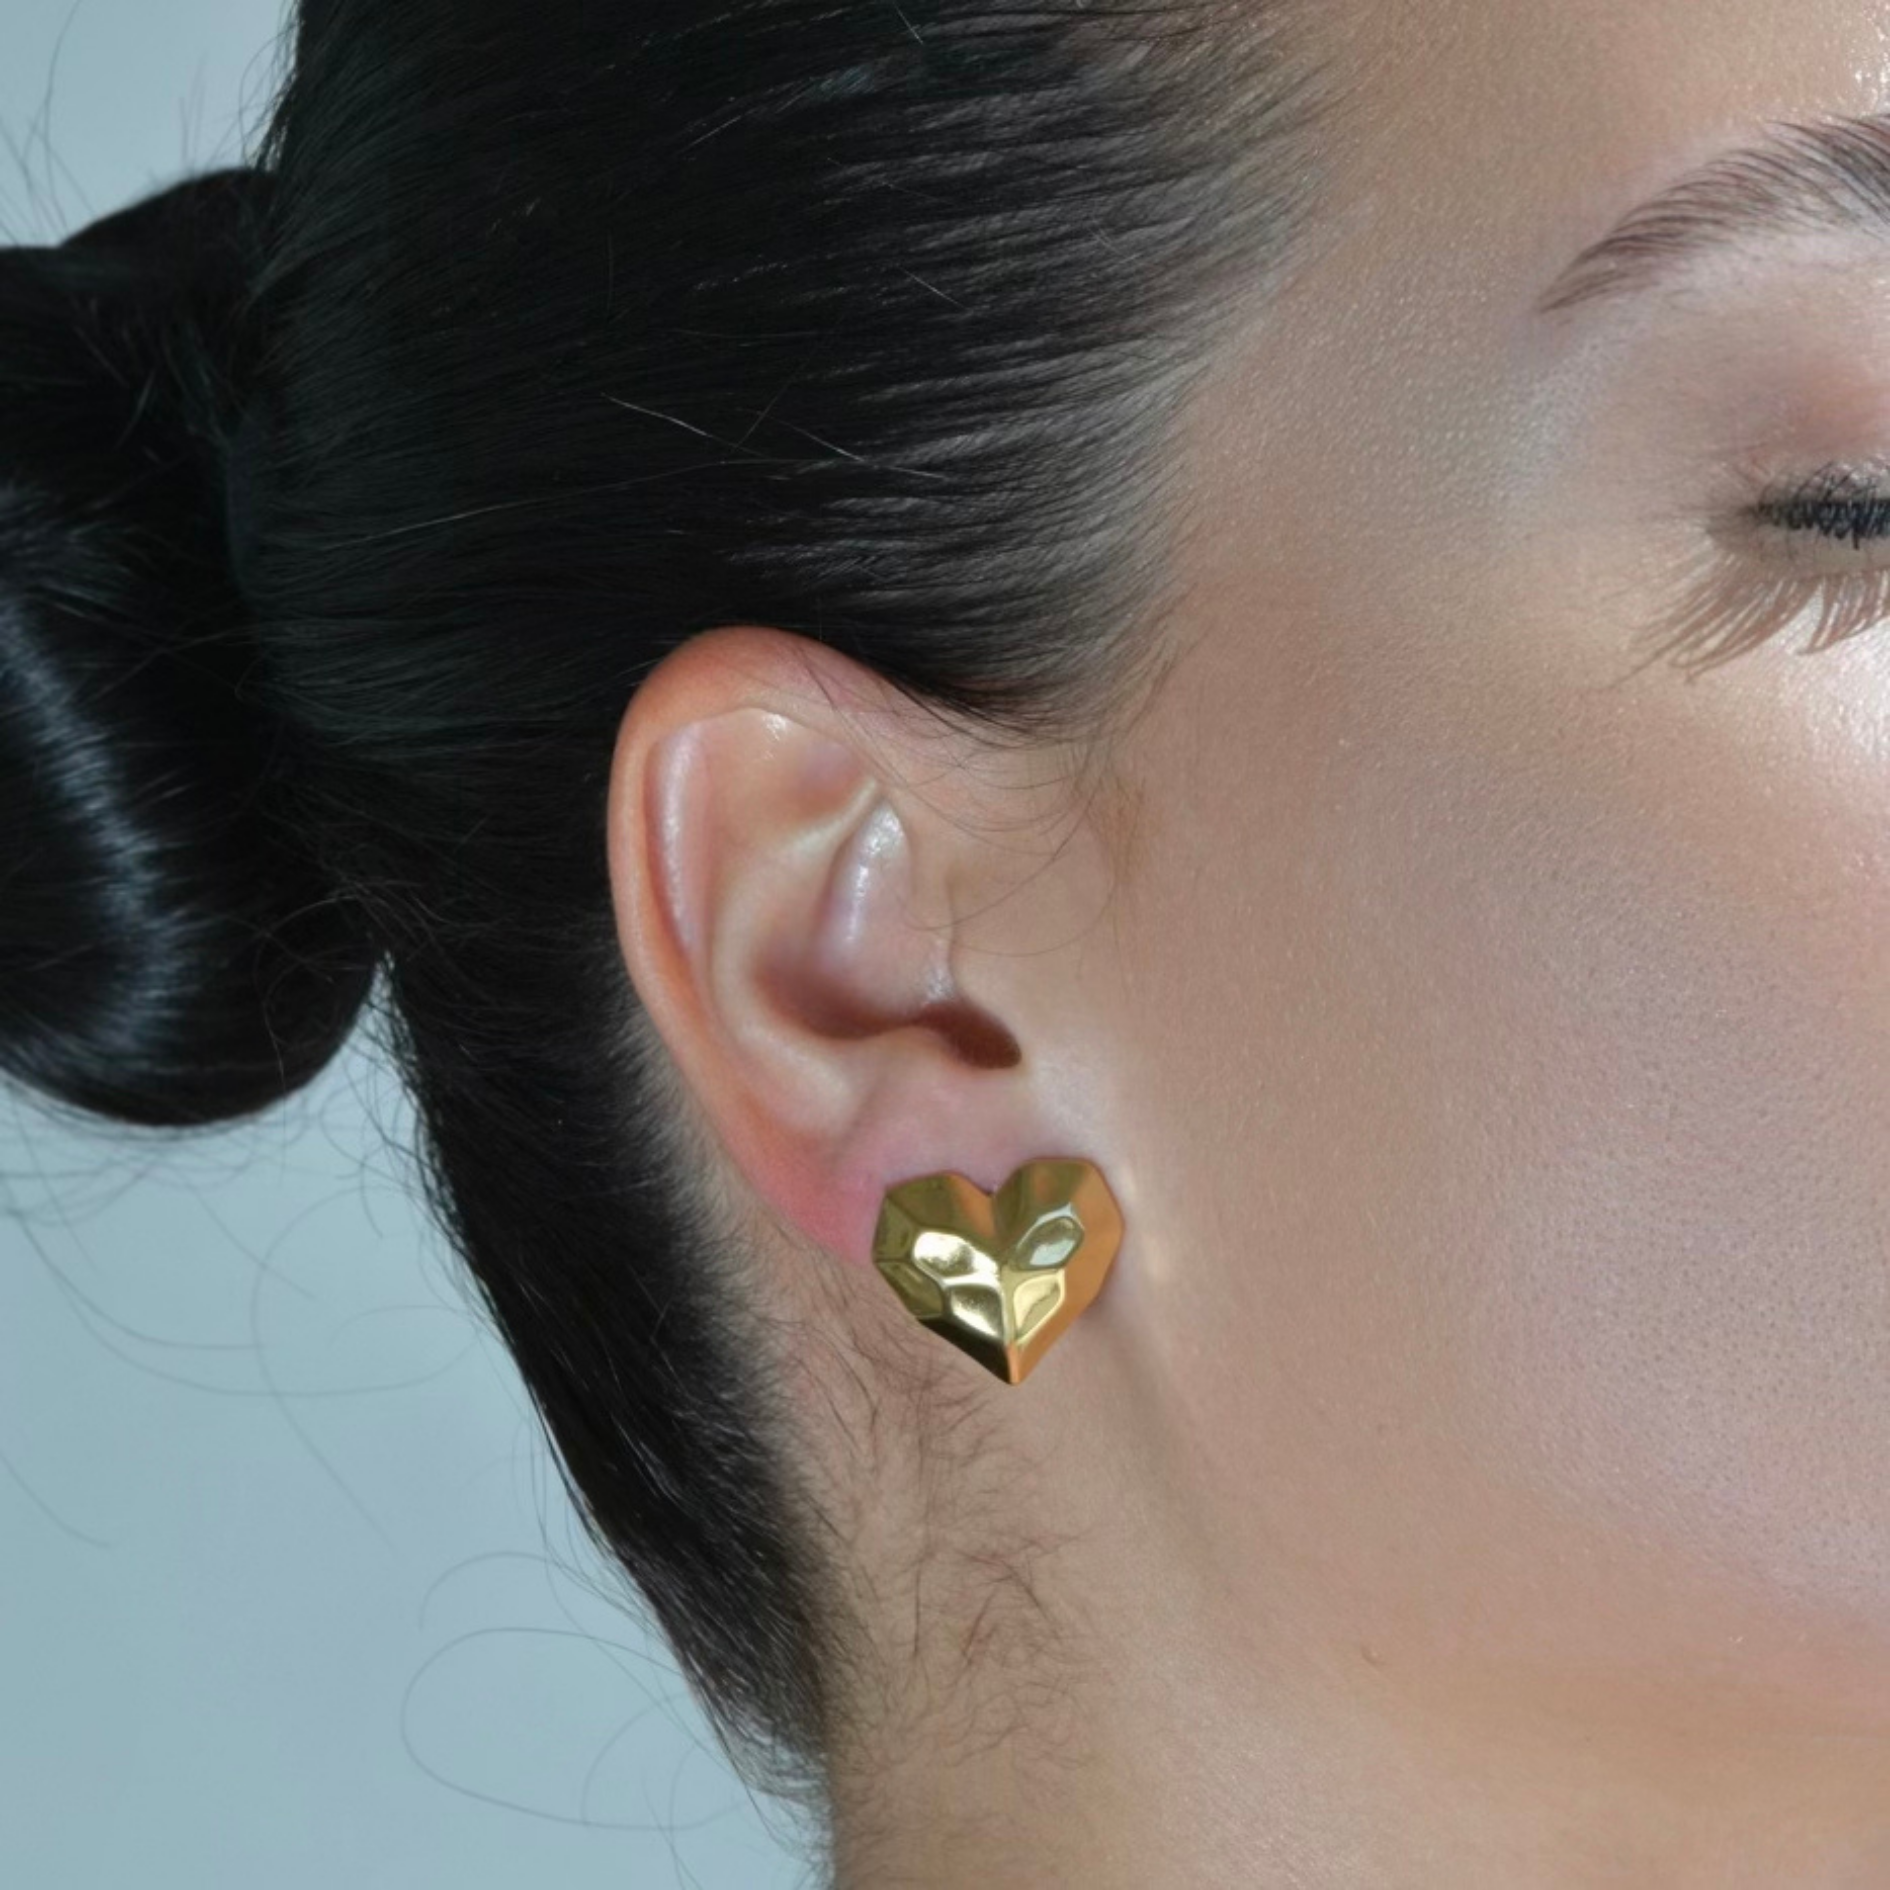 Heart shapped gold earrings. Hammered surface of the stud earrings. waterproof earrings